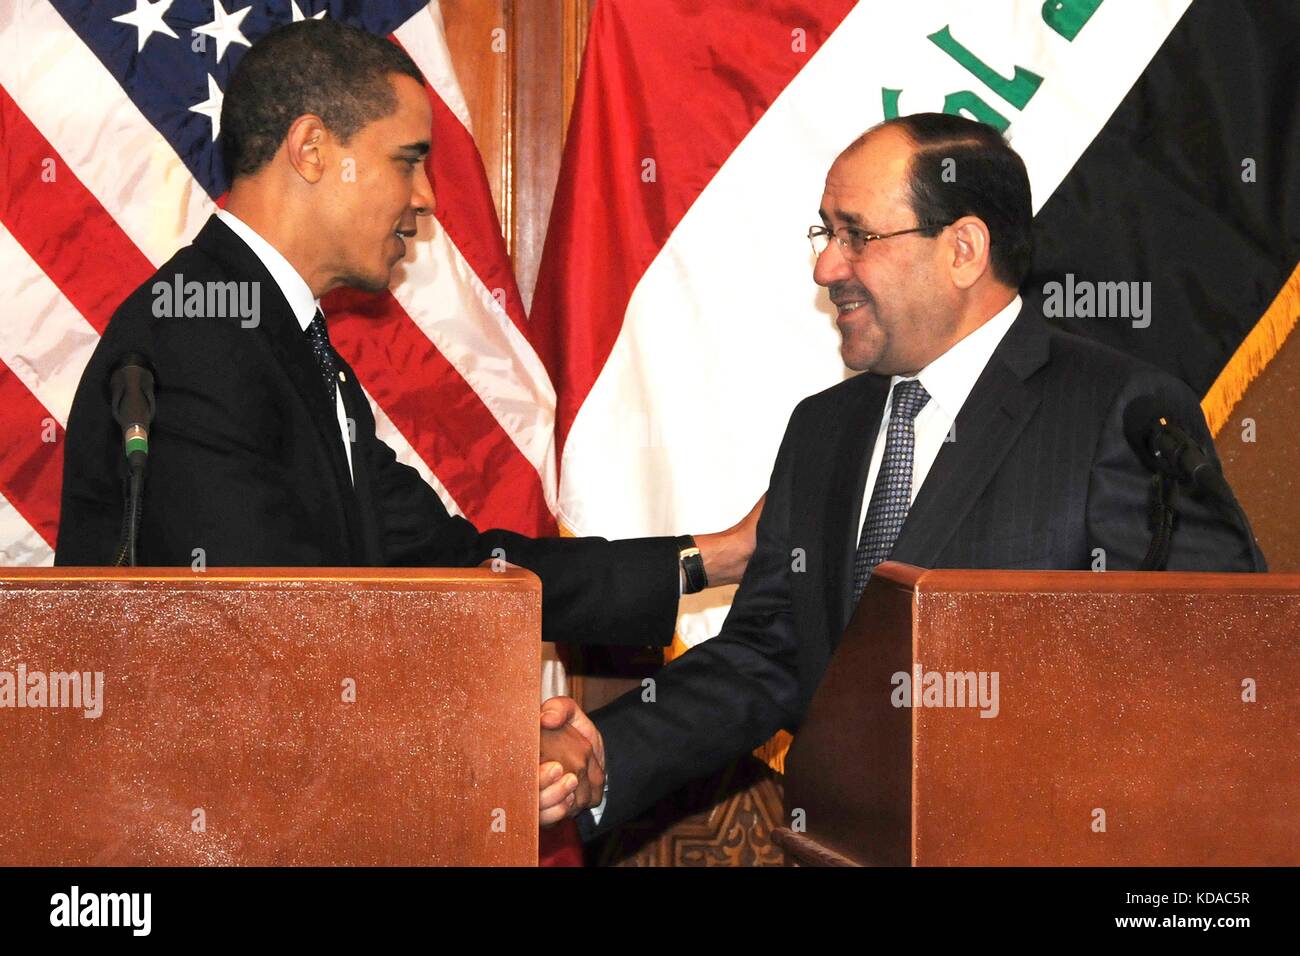 Us-Präsident Barack Obama schüttelt Hände mit den irakischen Premierminister Nouri al-Maliki nach einer gemeinsamen Pressekonferenz im Camp Sieg April 7, 2009 in Bagdad, Irak. Stockfoto